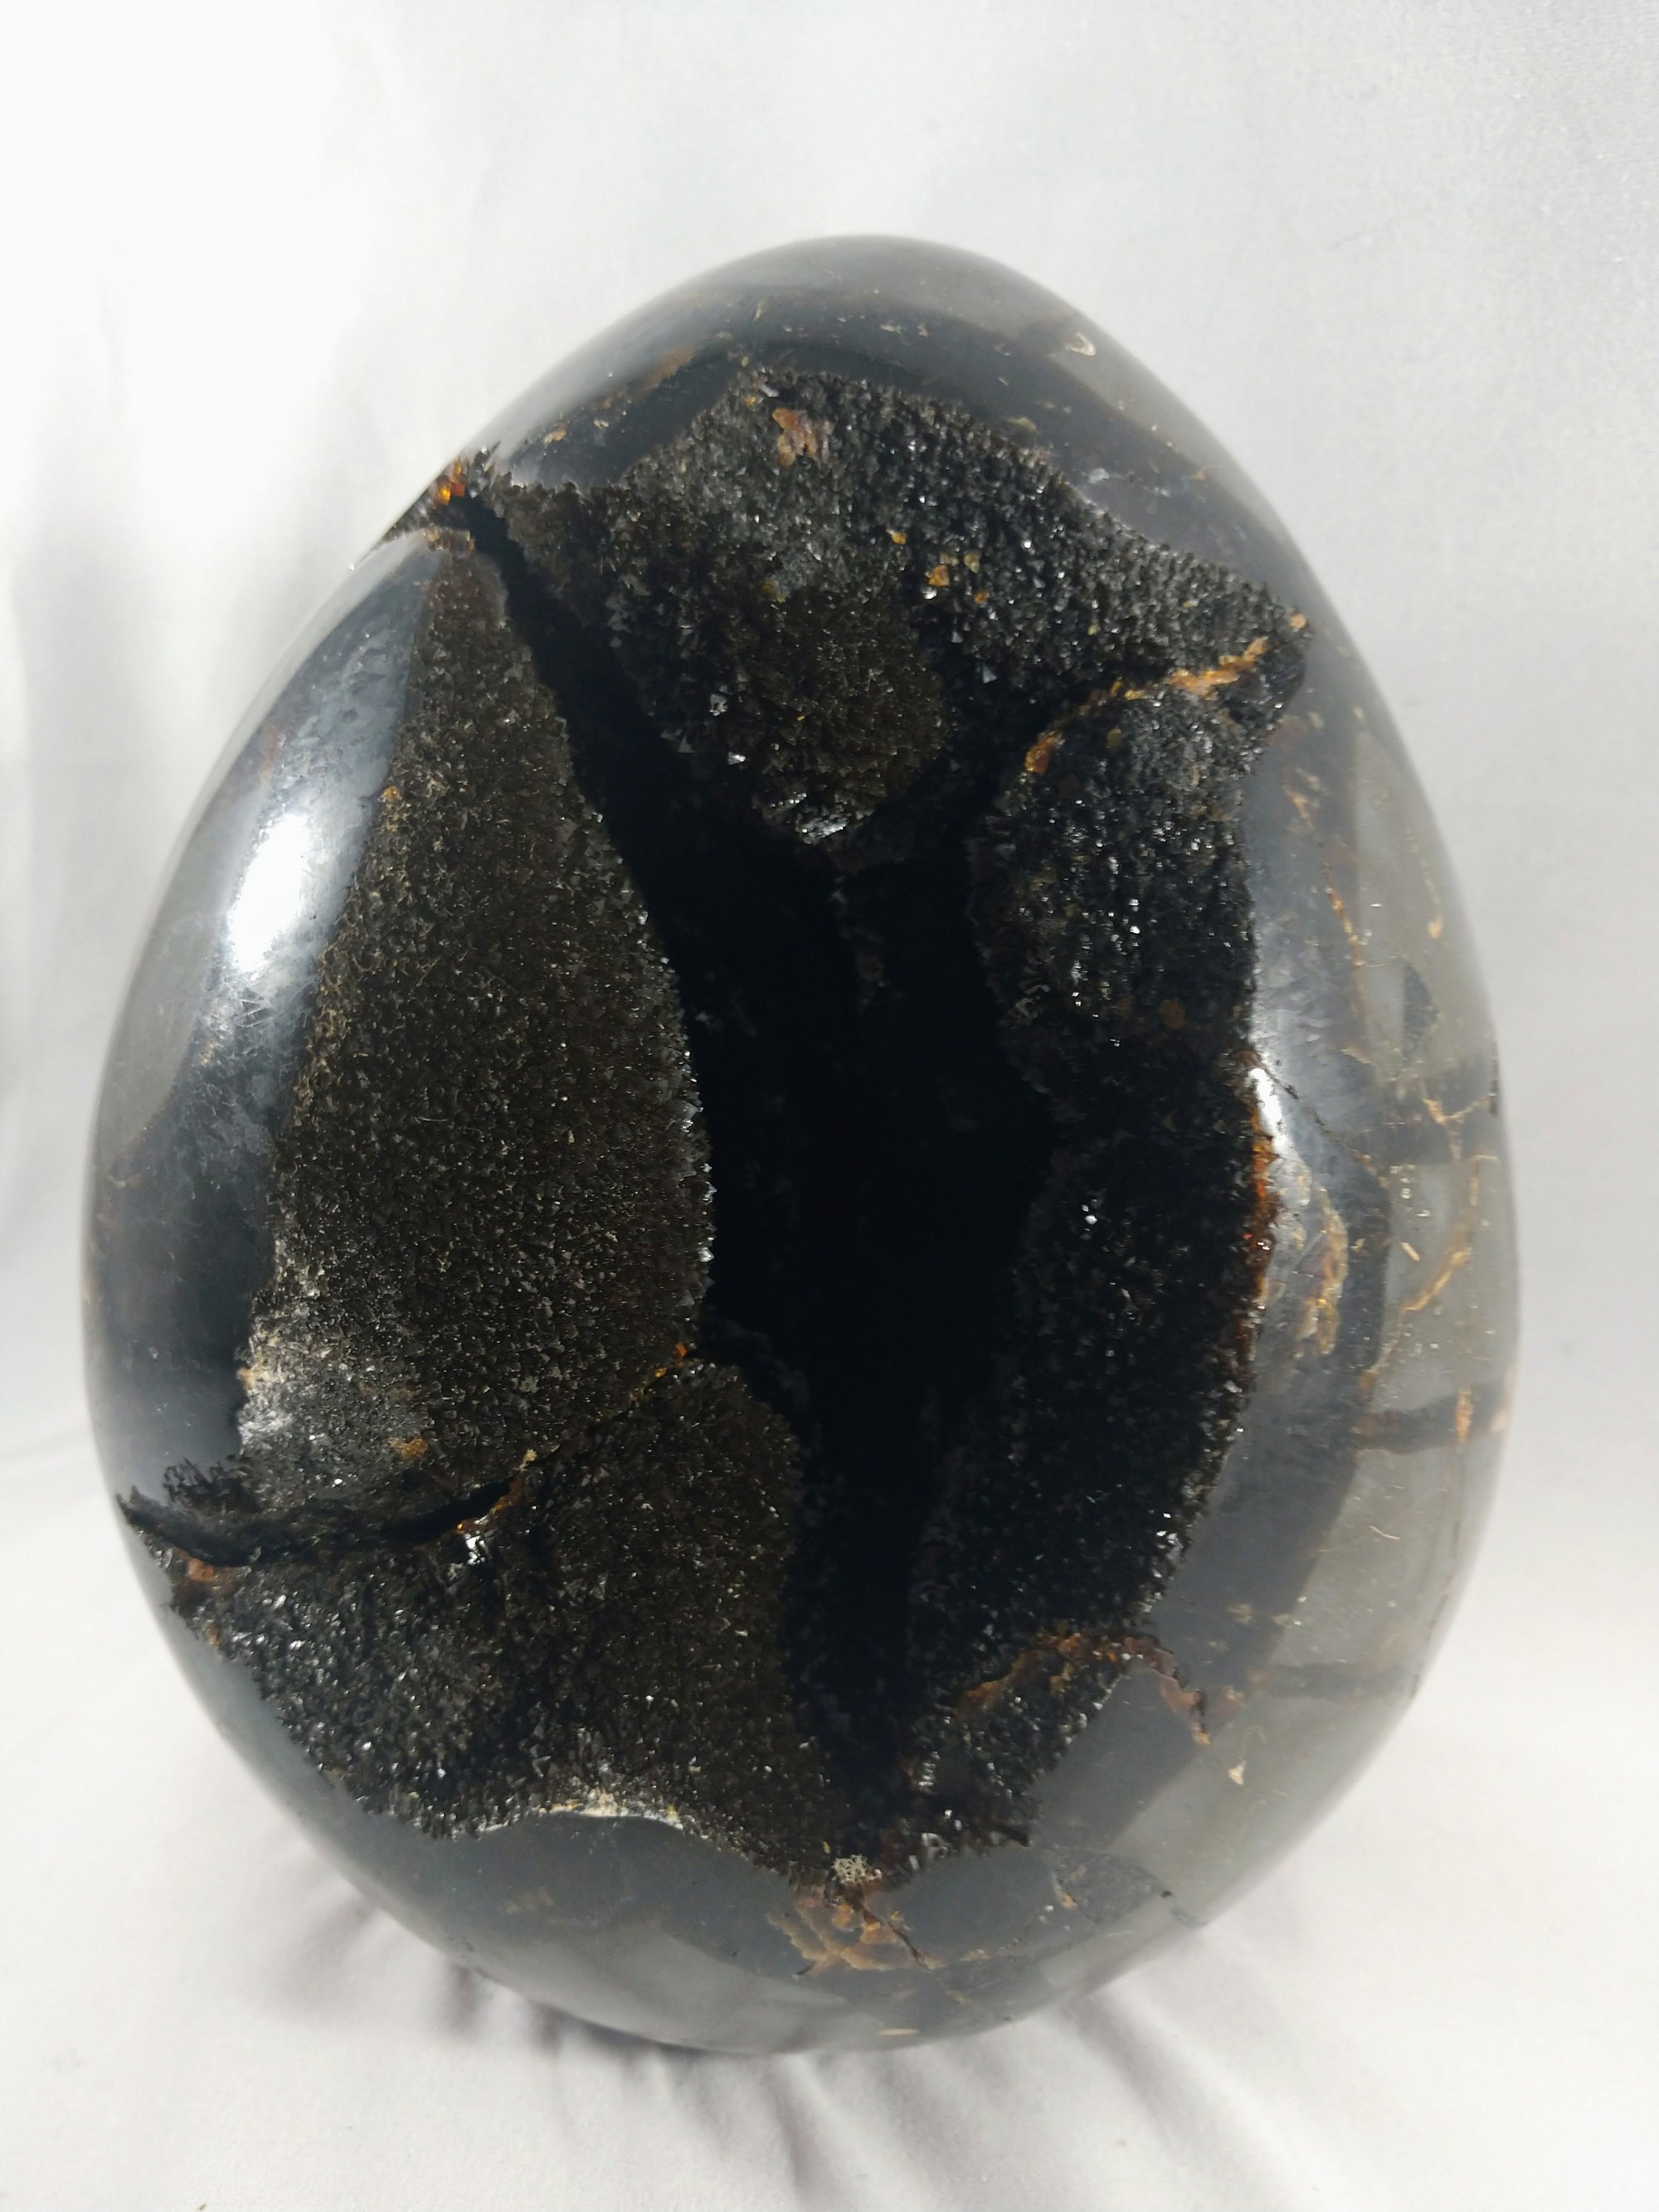 Septerian Egg, Madagascar